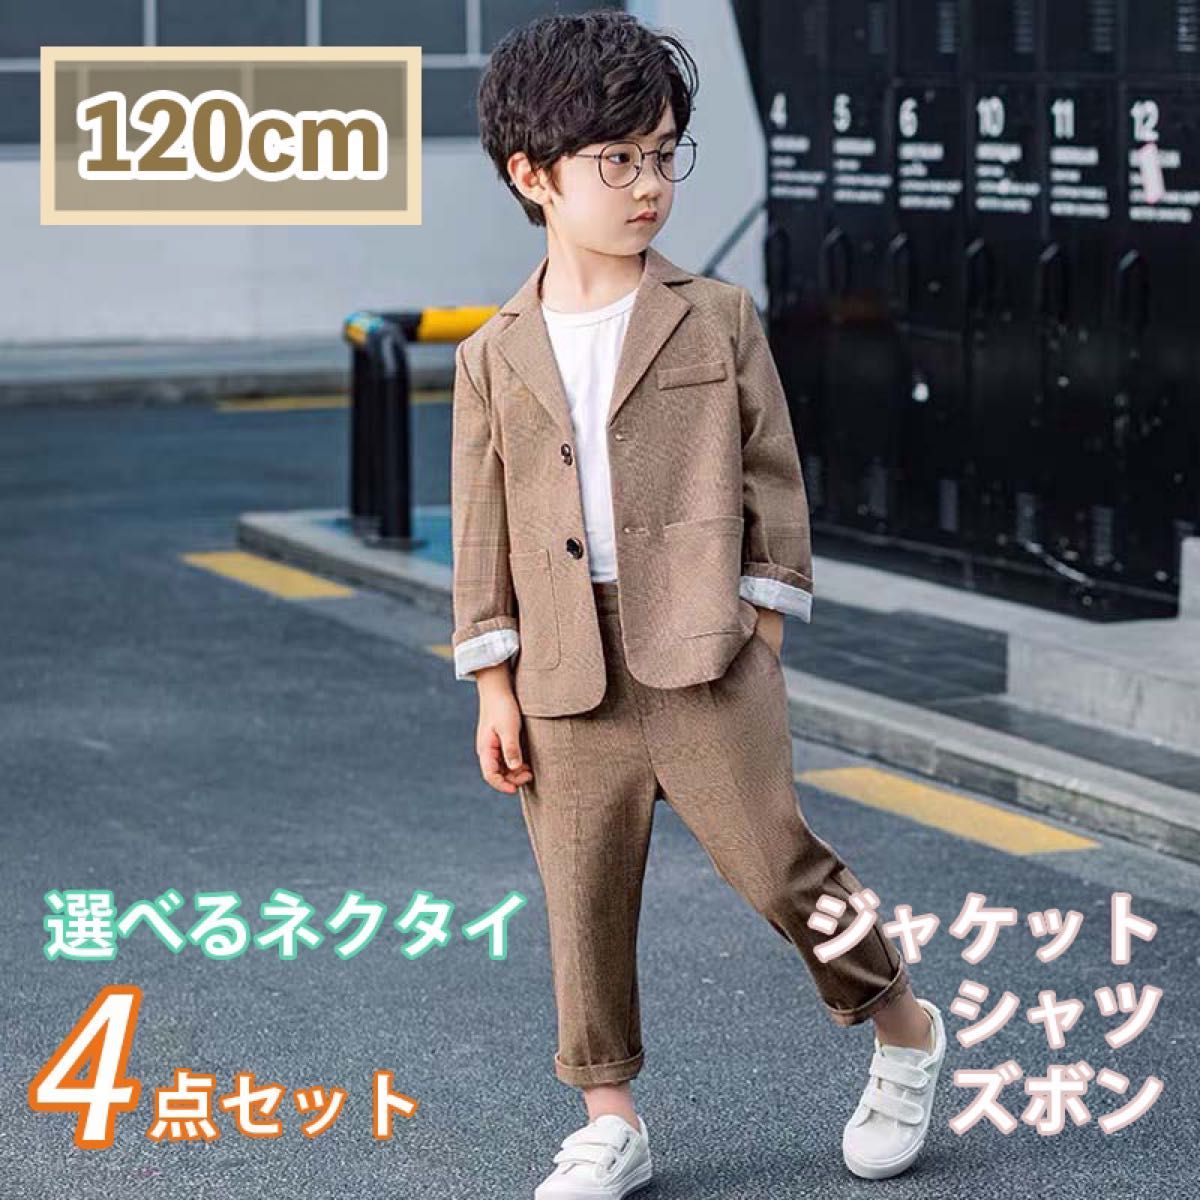 入学式 セレモニースーツ セット120cm 男の子 - フォーマル